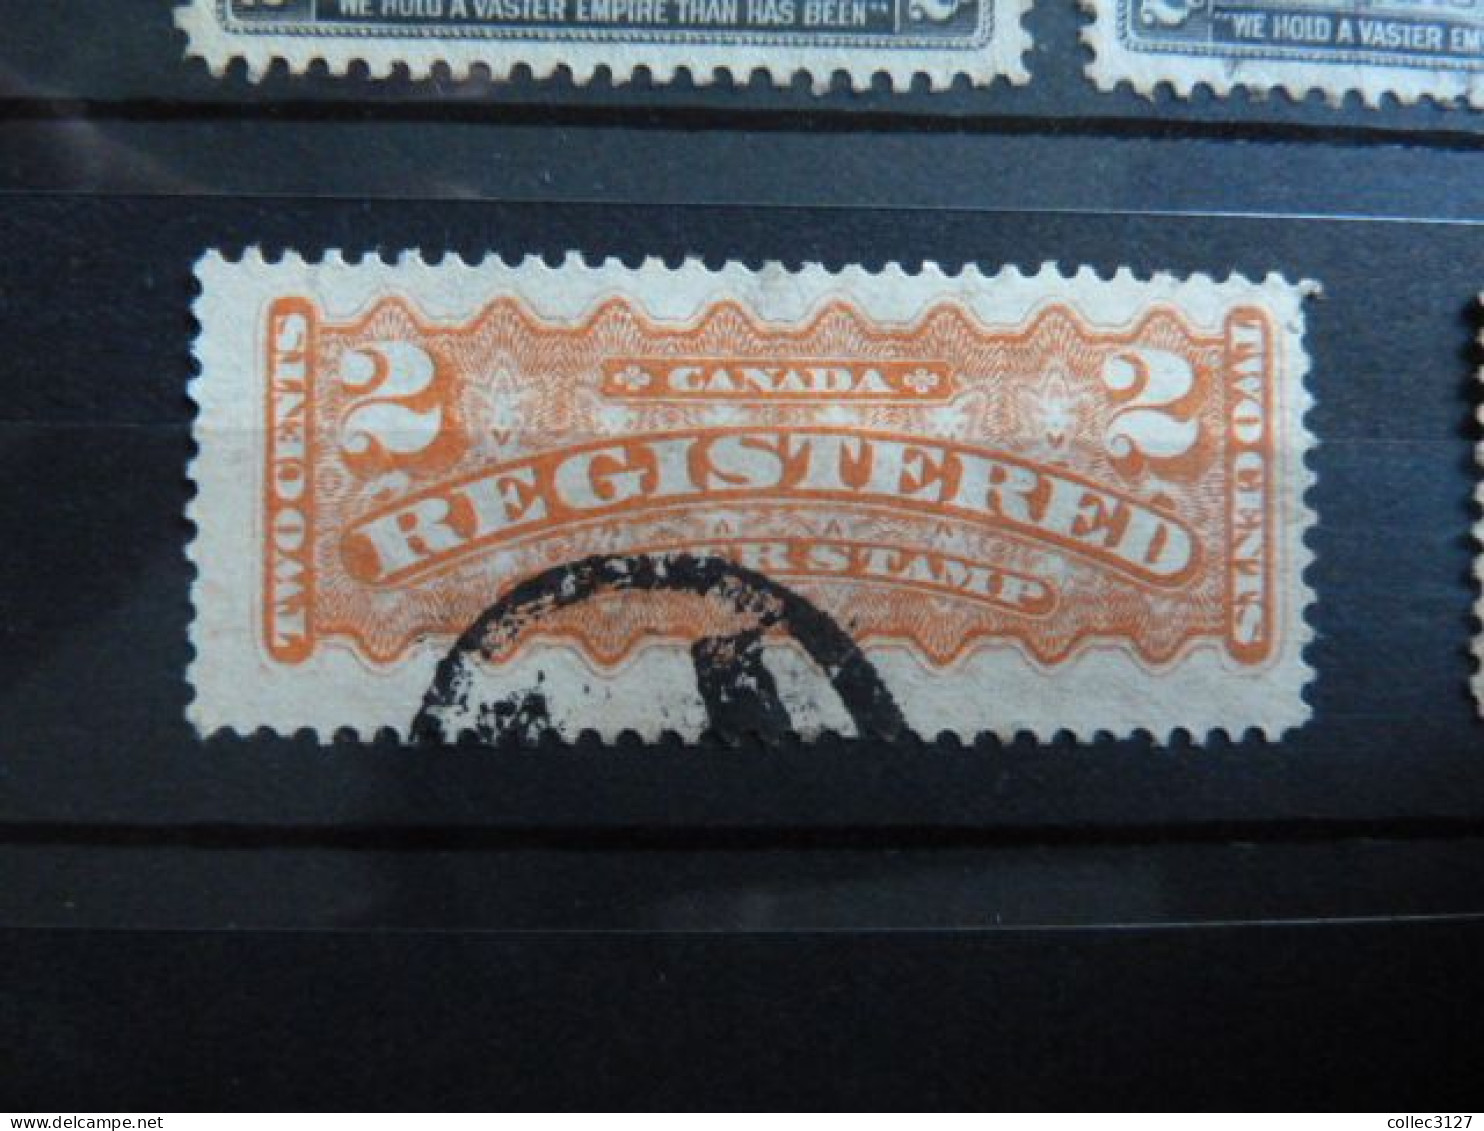 H2 - Canada Petit lot de timbres d'avant 1900 - Les timbres neufs sont à considérer sans gomme - voirs photos détaillées